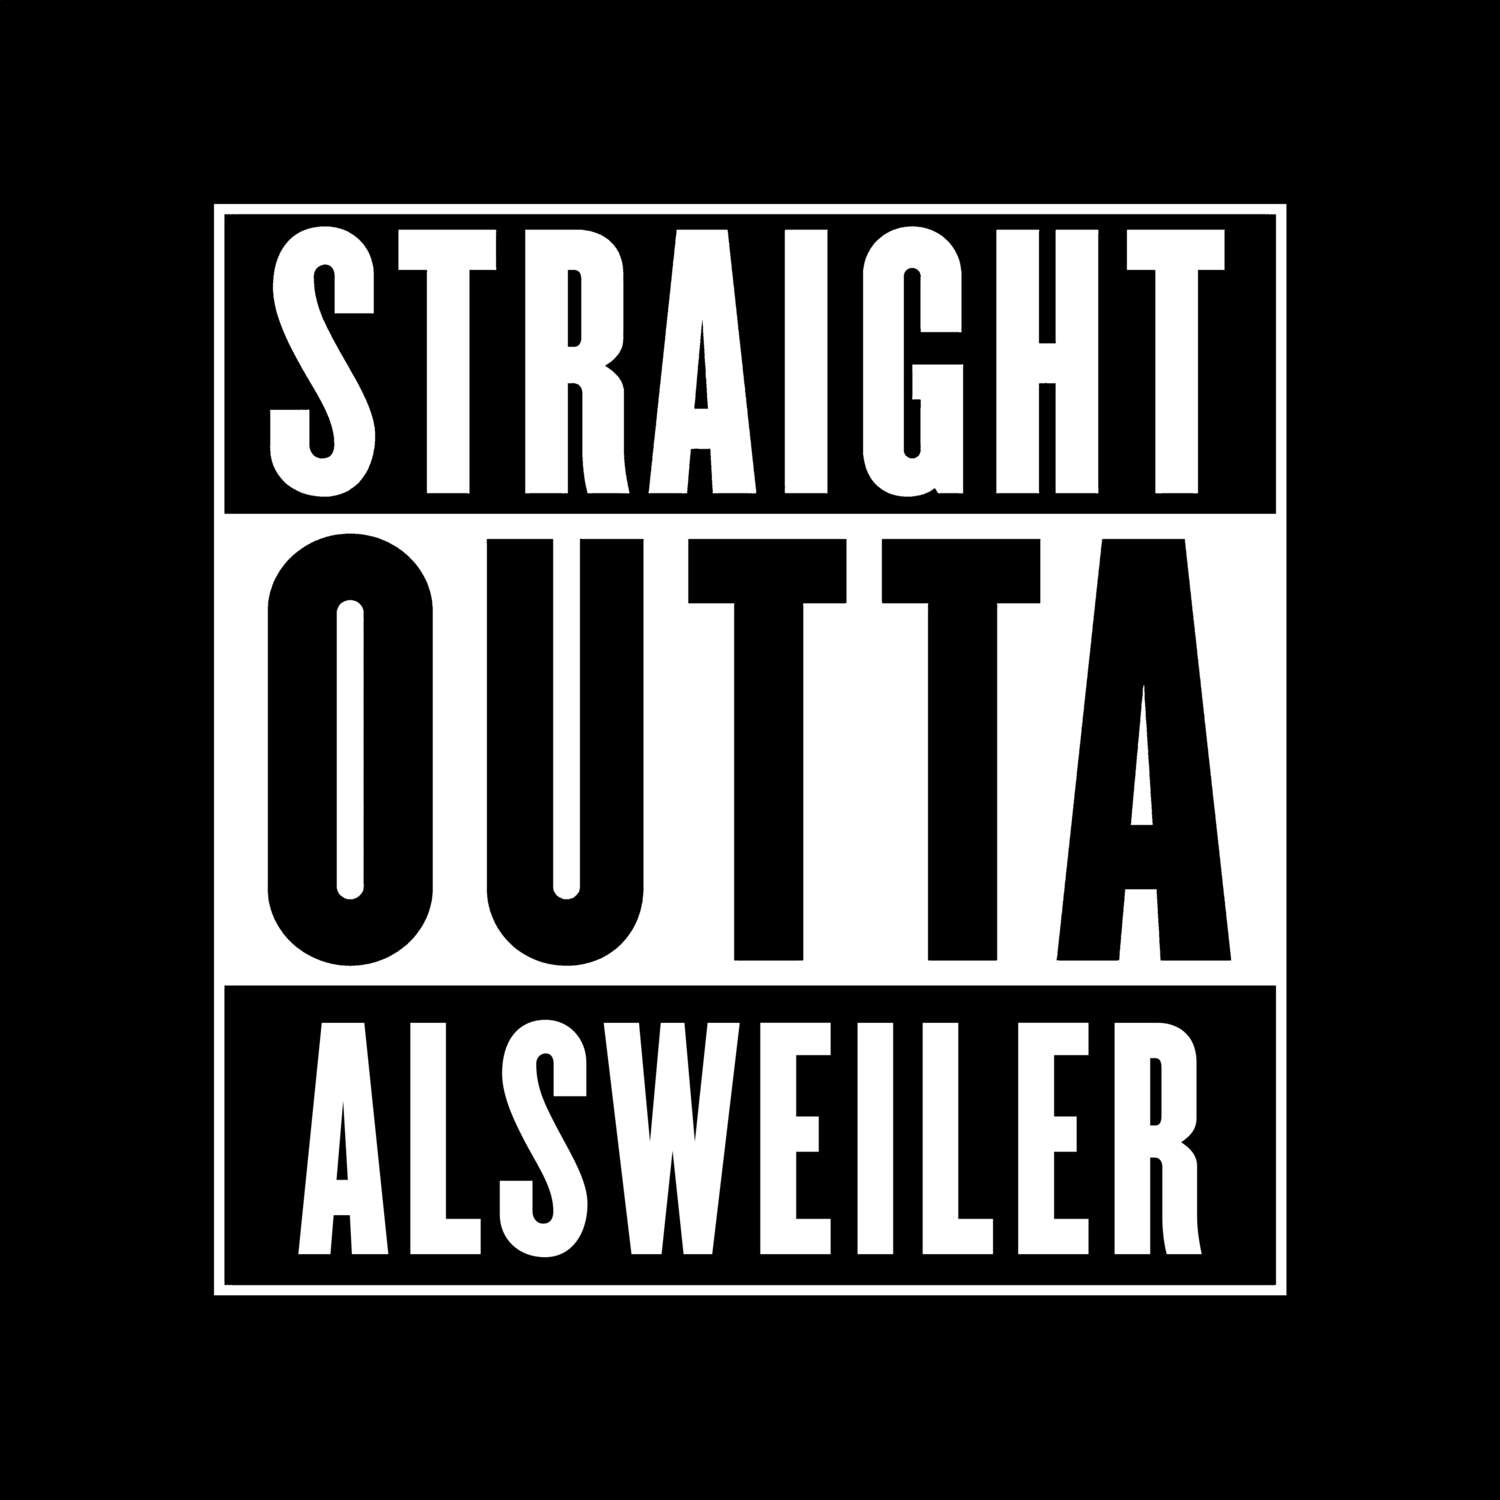 Alsweiler T-Shirt »Straight Outta«